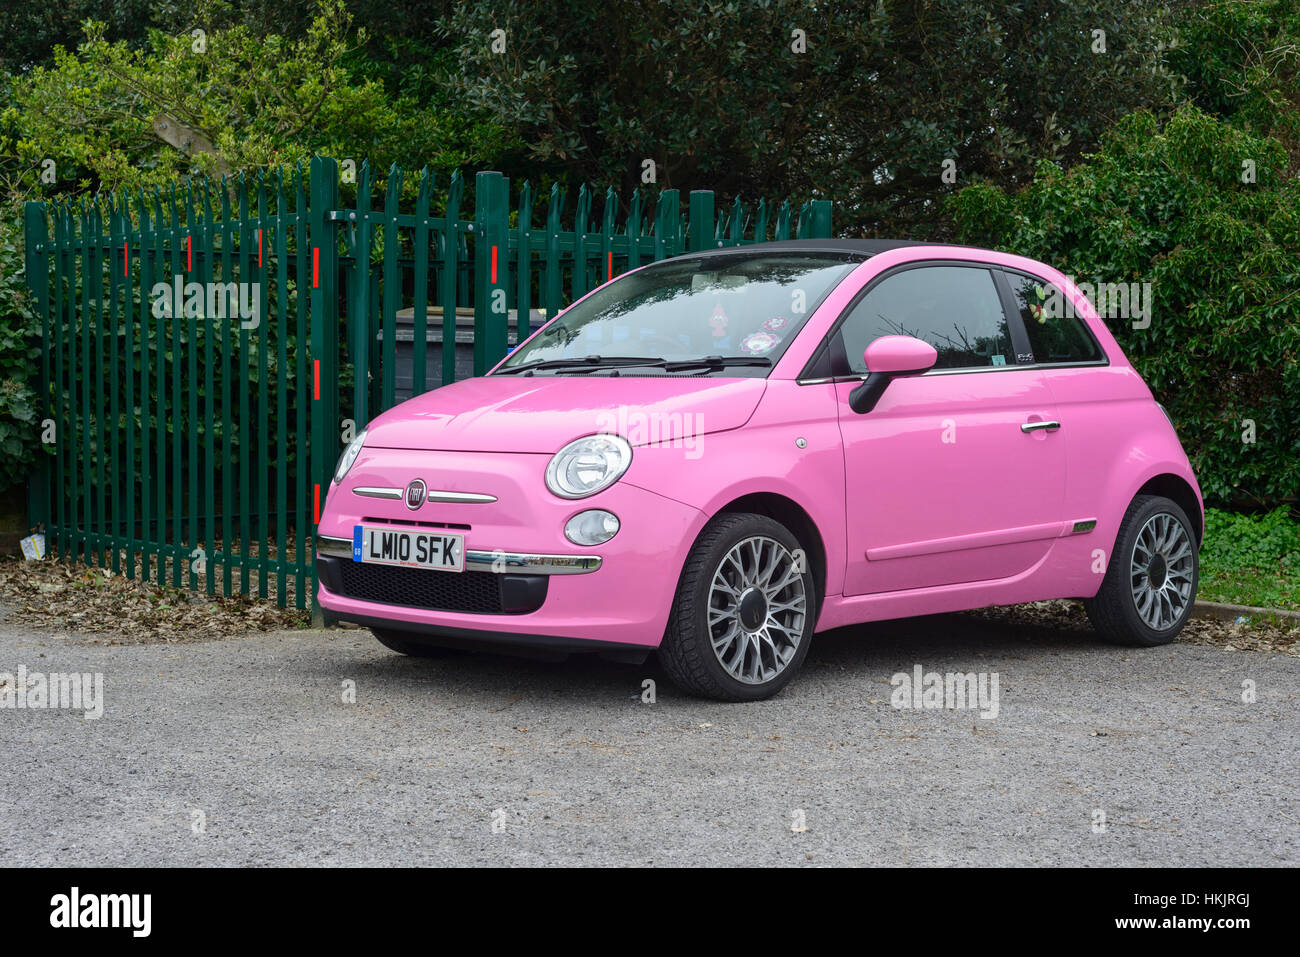 Pink car -Fotos und -Bildmaterial in hoher Auflösung – Alamy